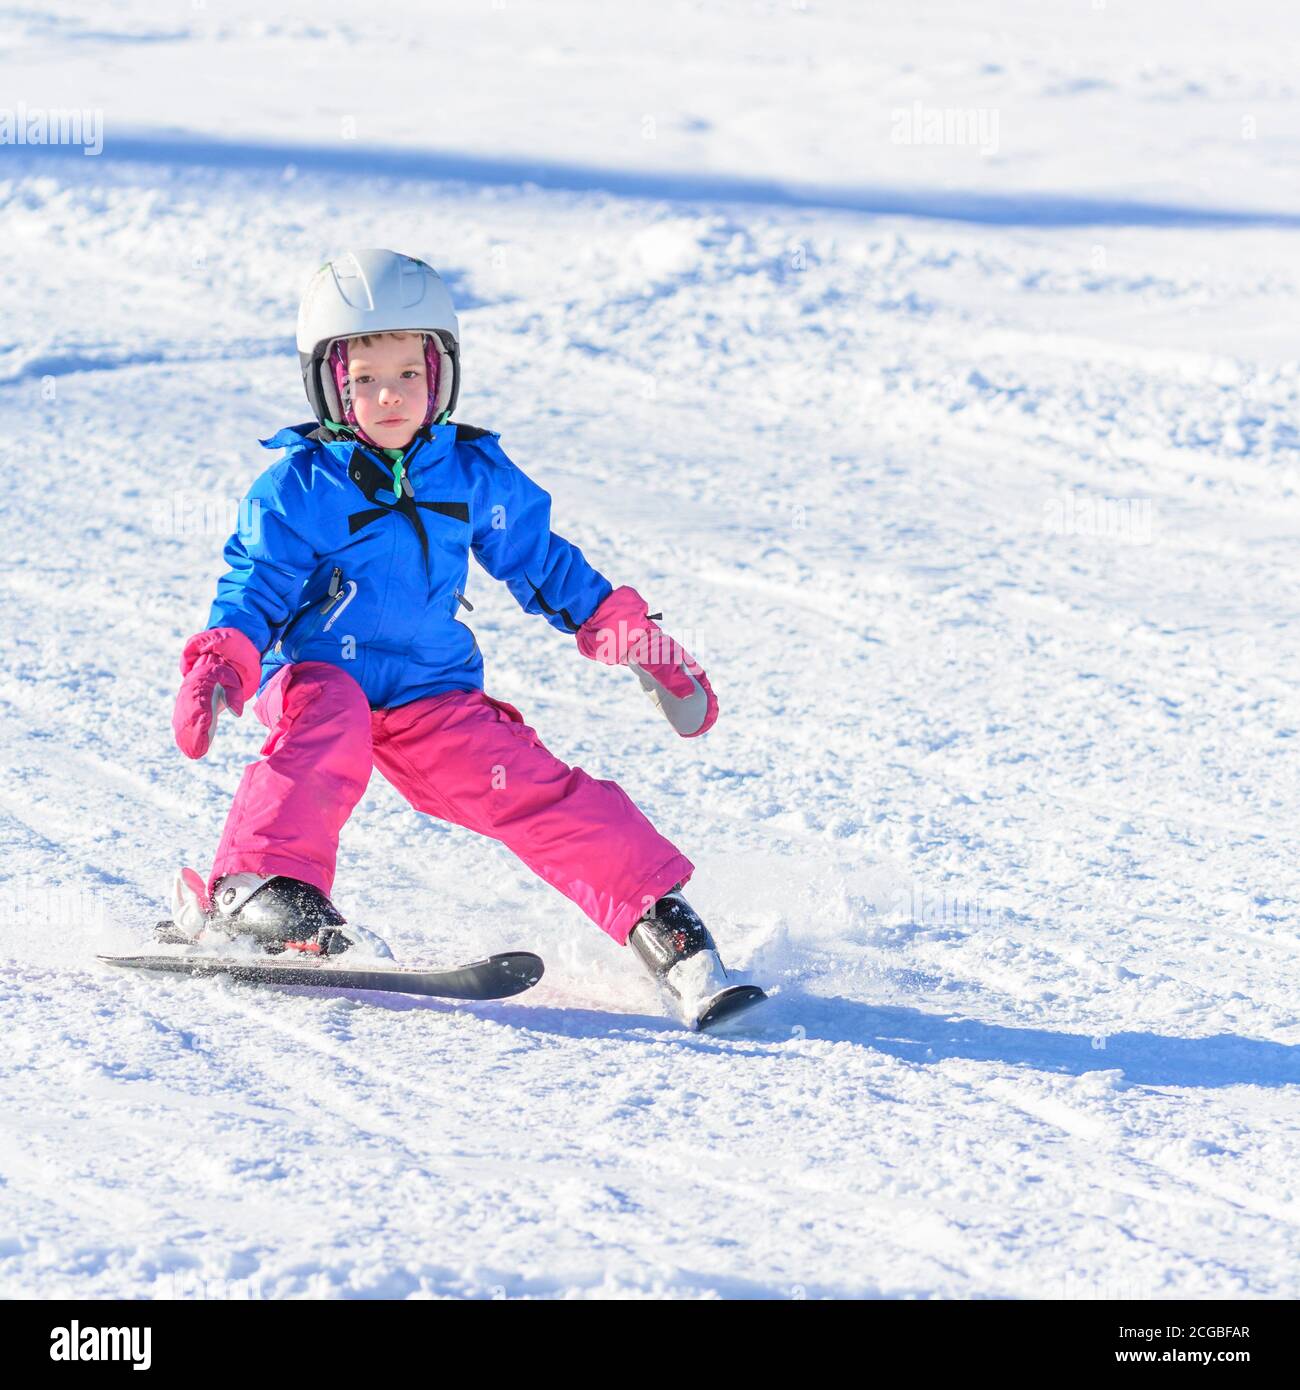 https://c8.alamy.com/comp/2CGBFAR/cute-little-girl-on-skis-2CGBFAR.jpg